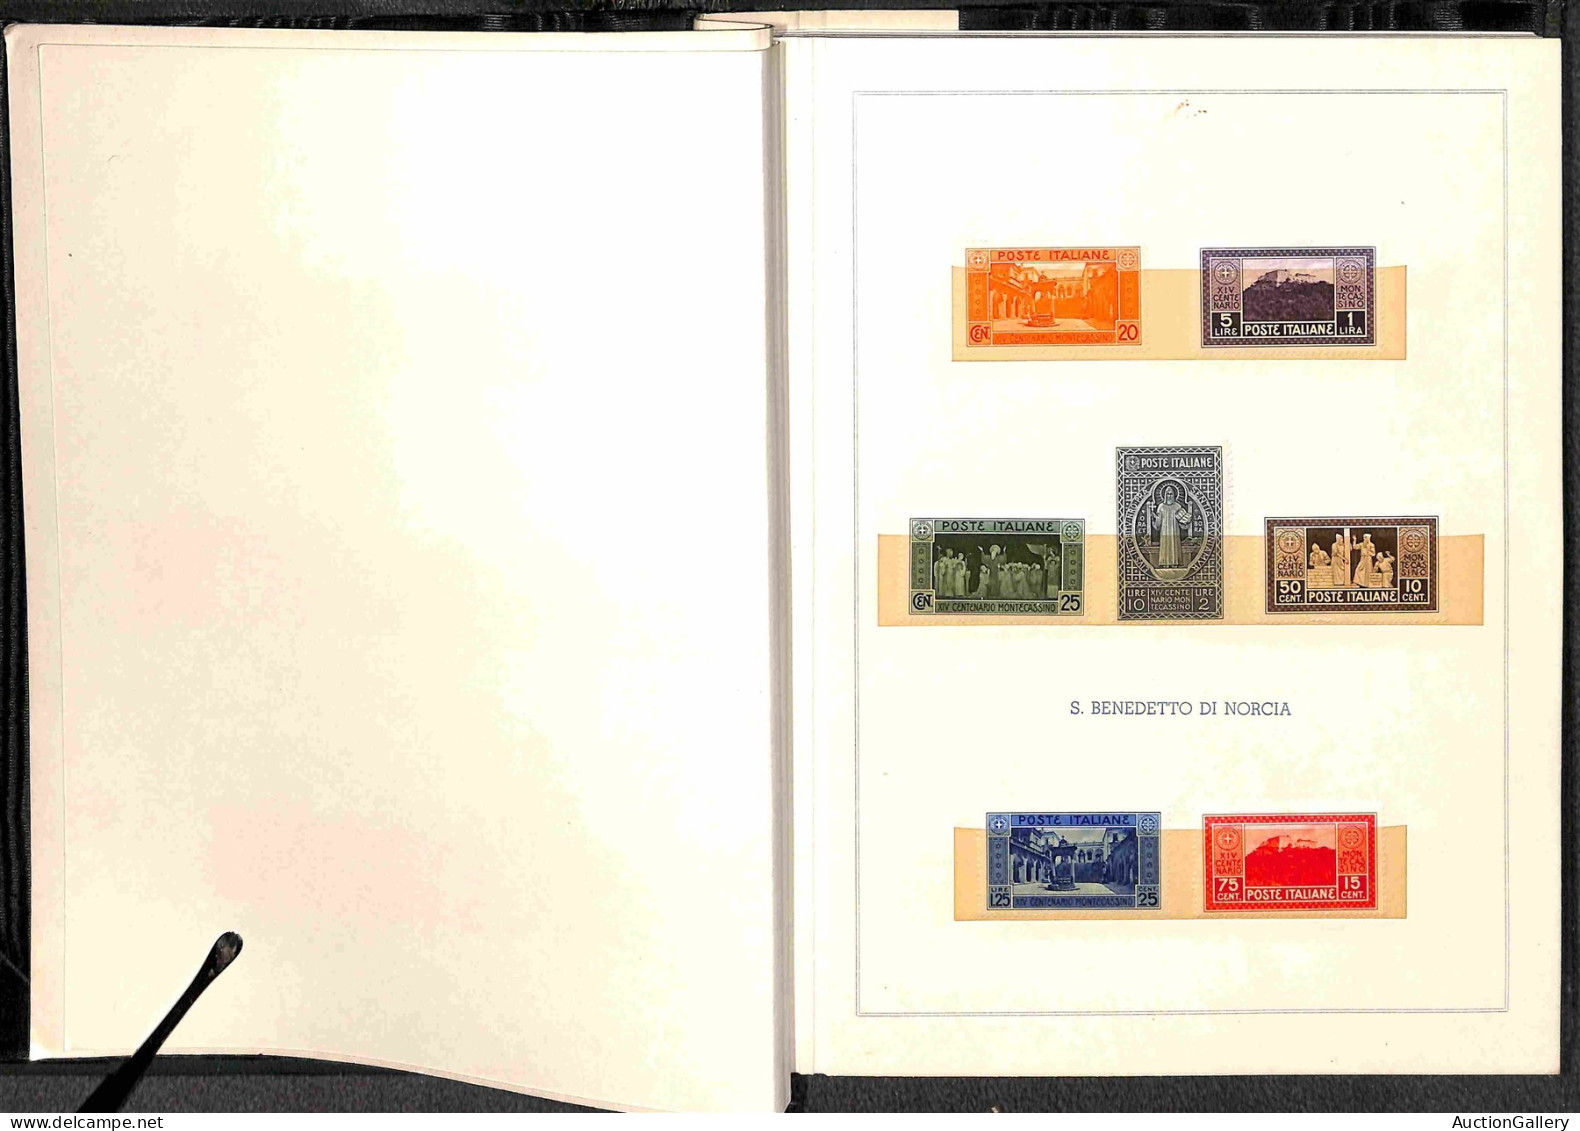 Lotti&Collezioni - AREA ITALIANA - 1926/1959 - Libro del Ministero delle Poste con all'interno valori nuovi delle serie 